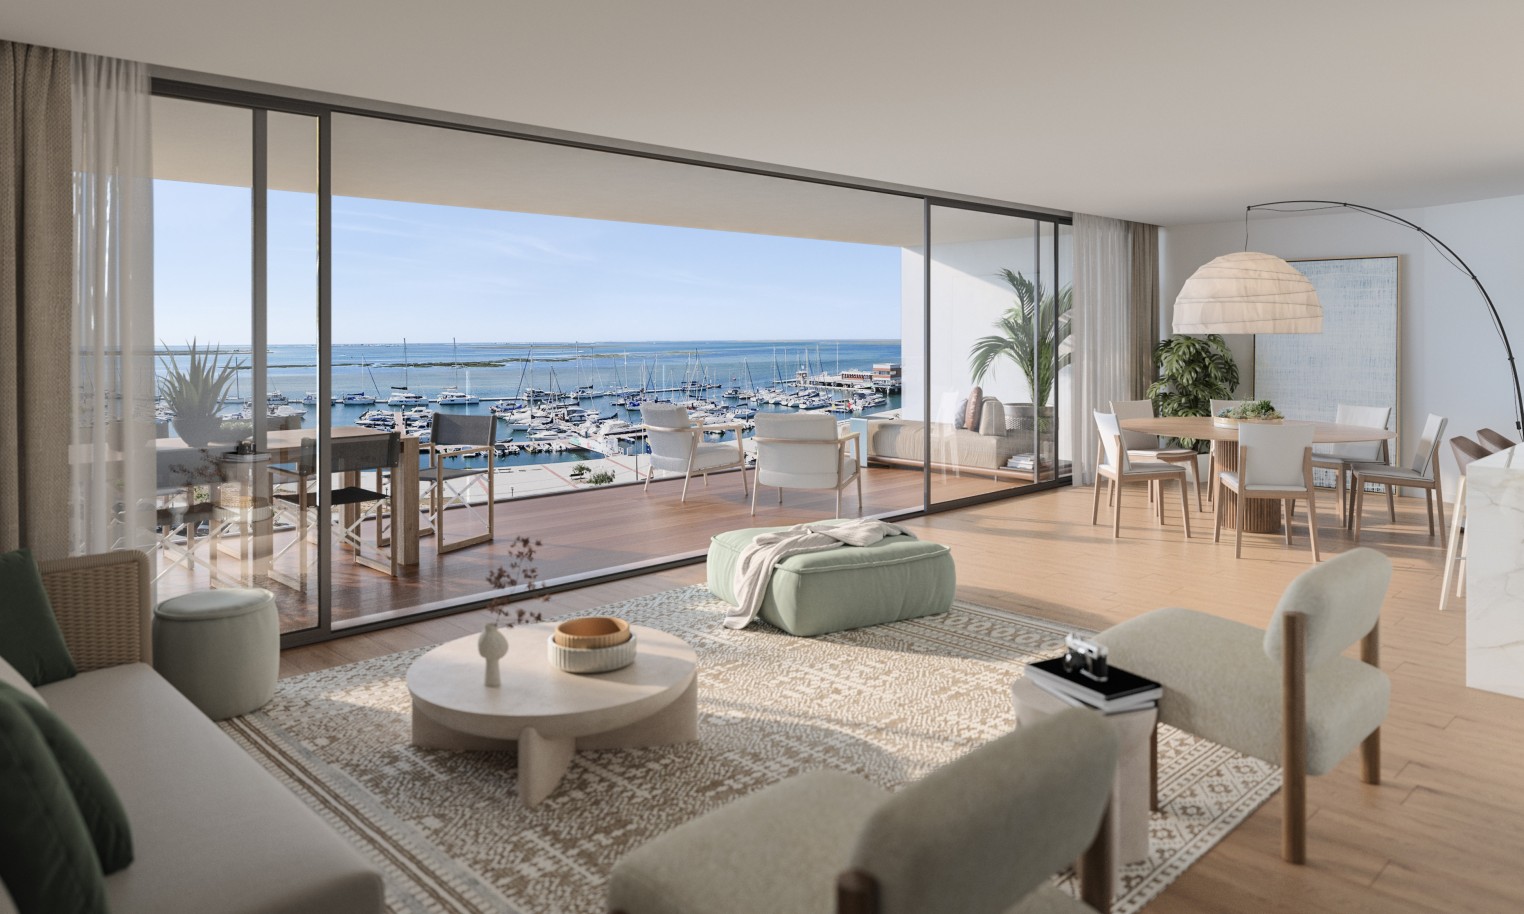 Pisos nuevos con vistas al mar, 1, 2 y 3 dormitorios, en venta en Olhão, Algarve_243733